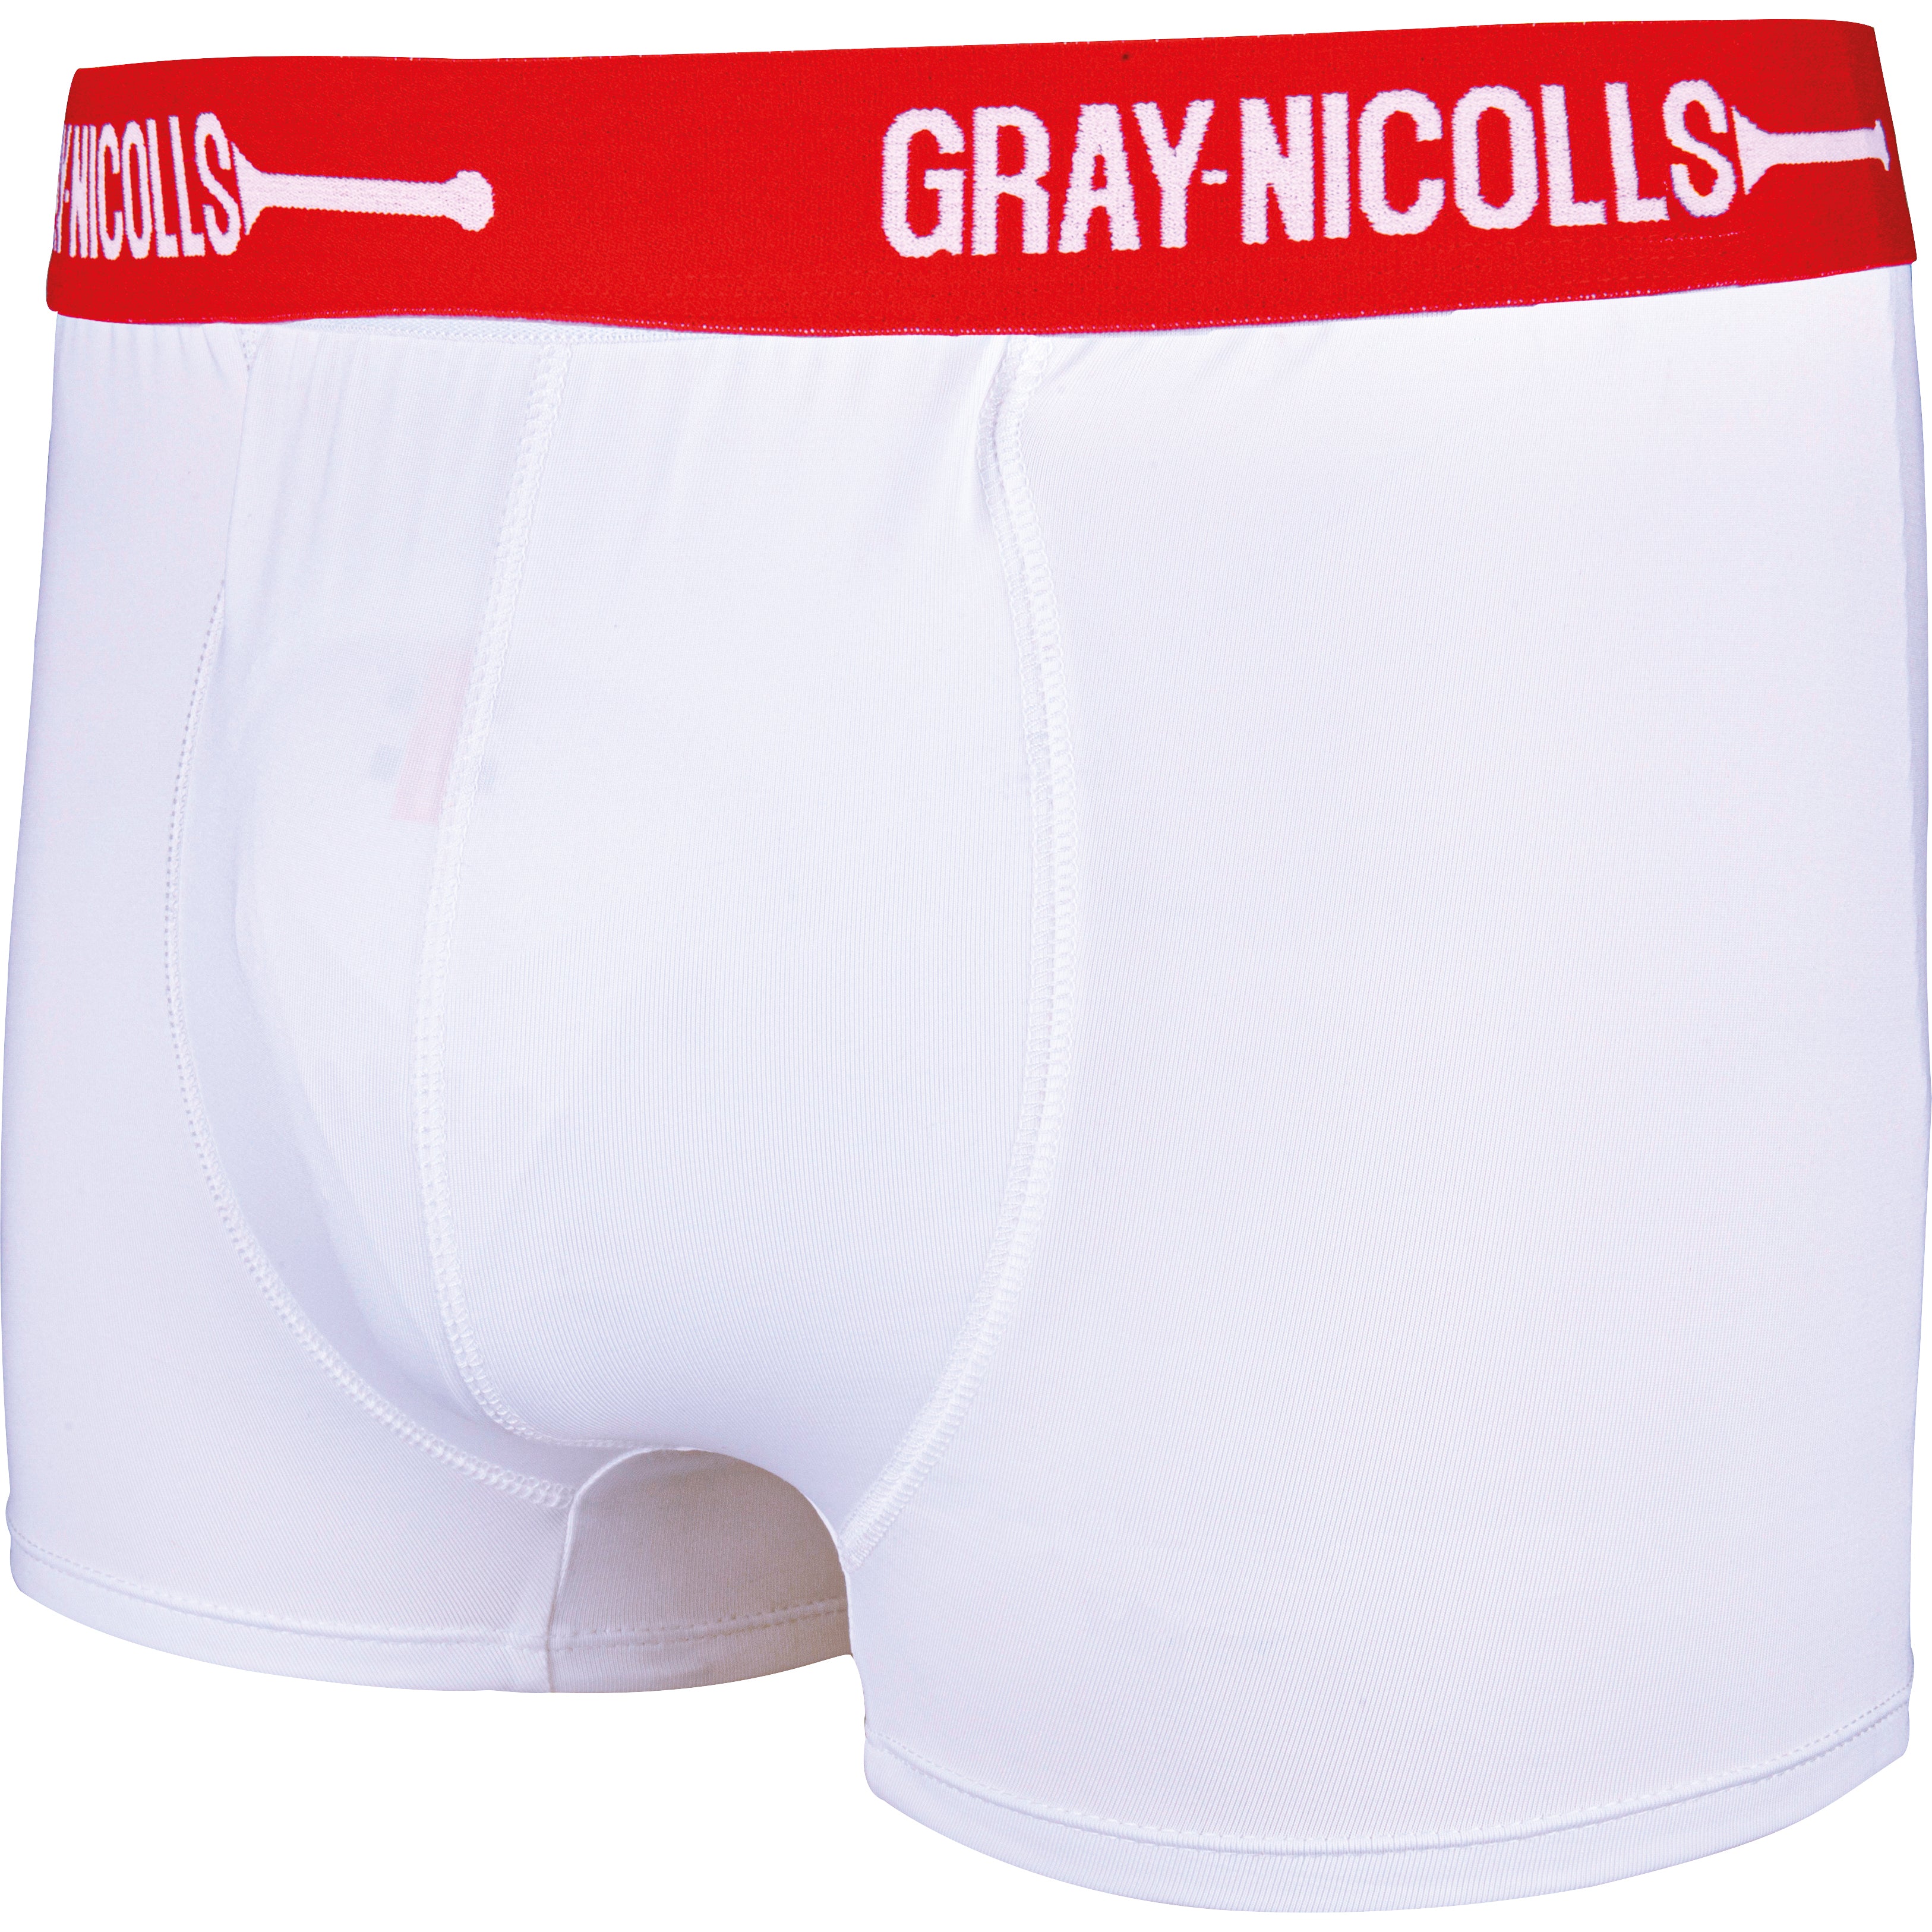 Gray-Nicolls Underwear